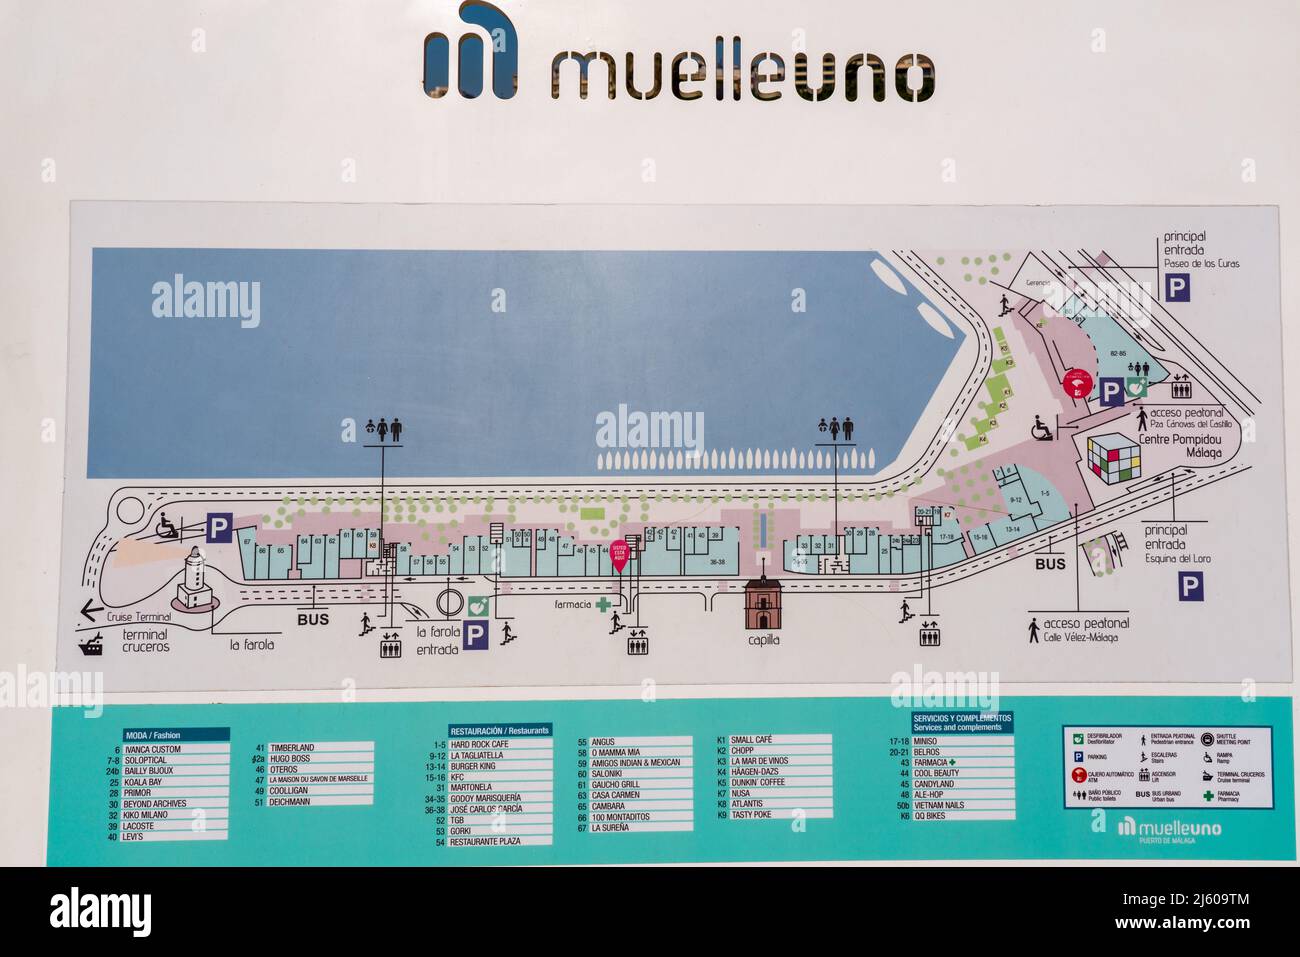 Die Karte des Hauptdocks des Hafens von Malaga. Die ganze Lage und die Touristenattraktion von 'Muelle Uno' Dock. Stockfoto